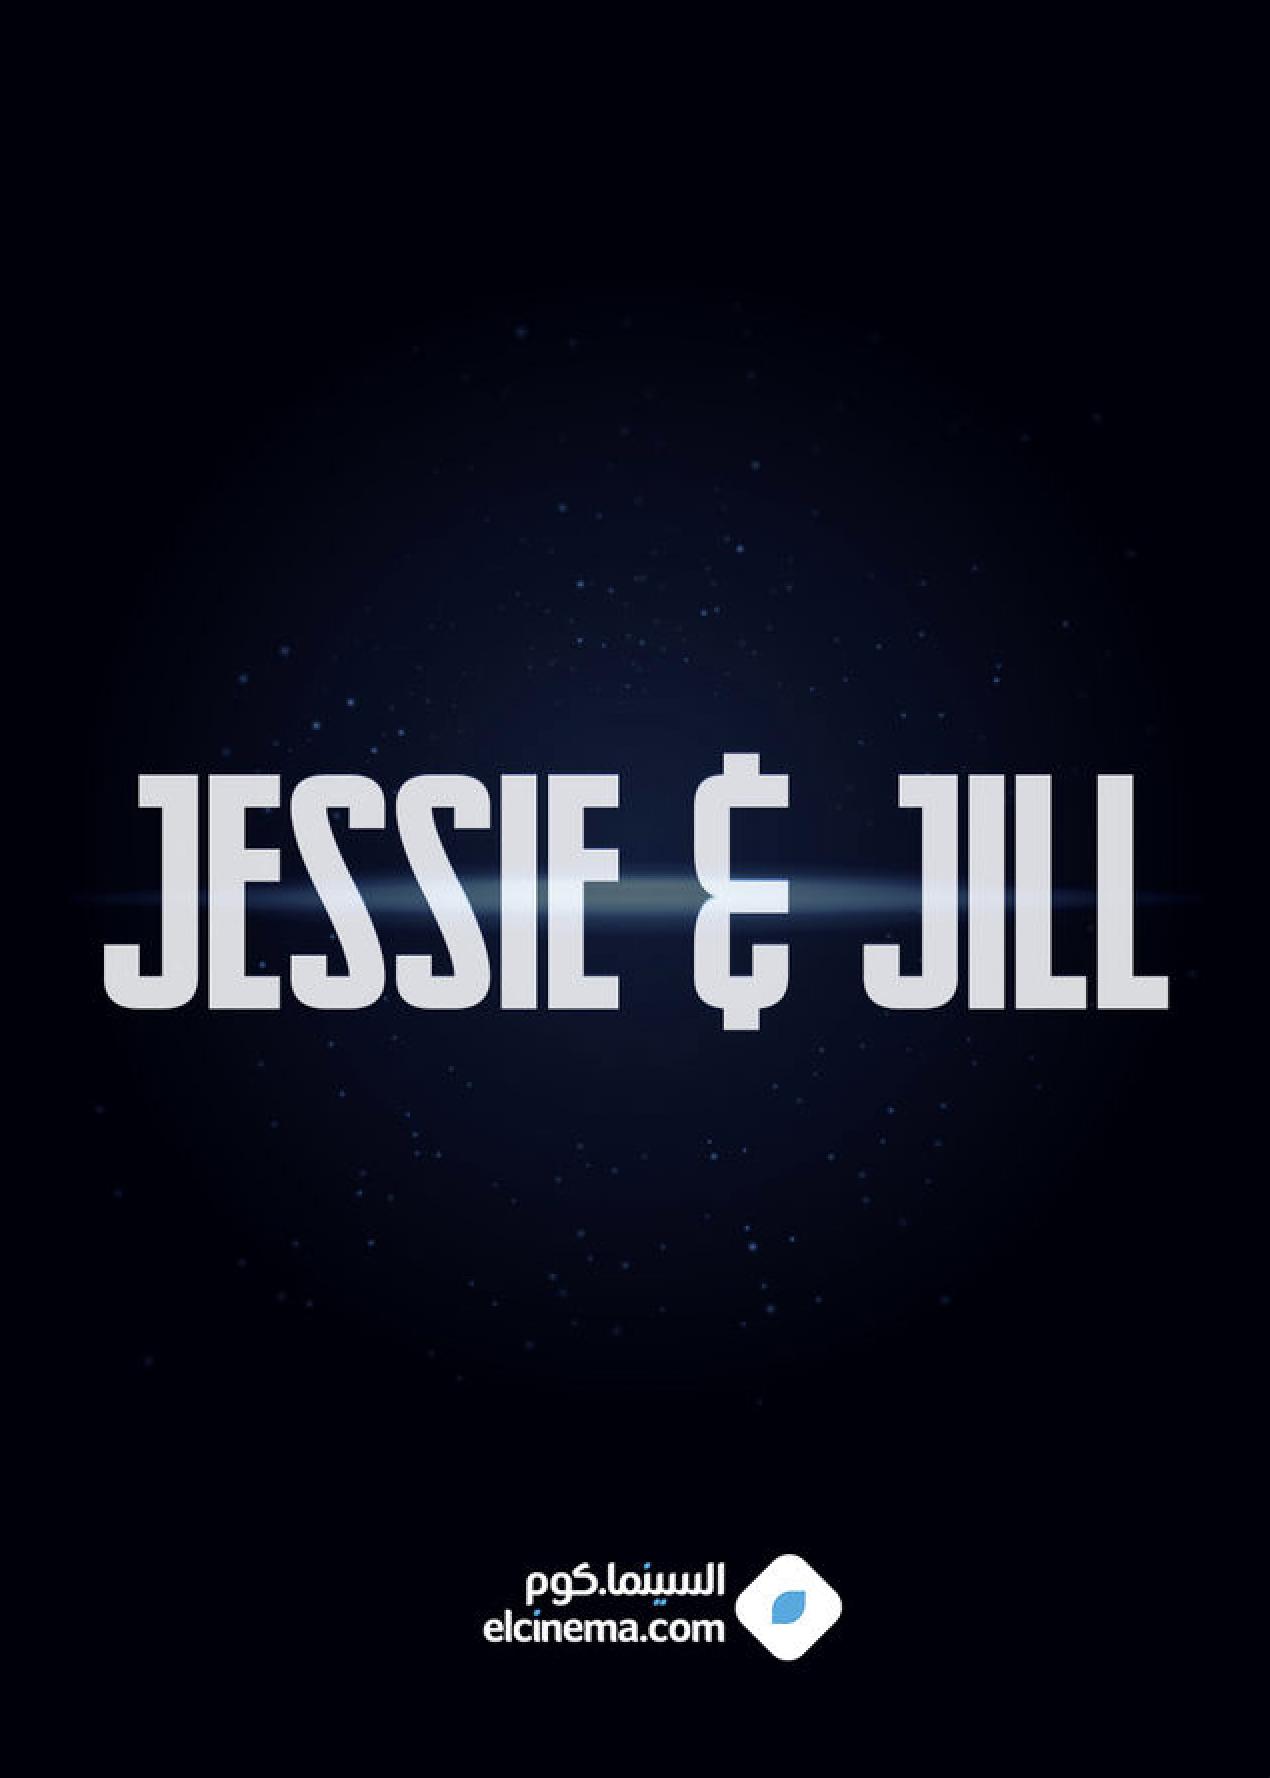 Jessie & Jill